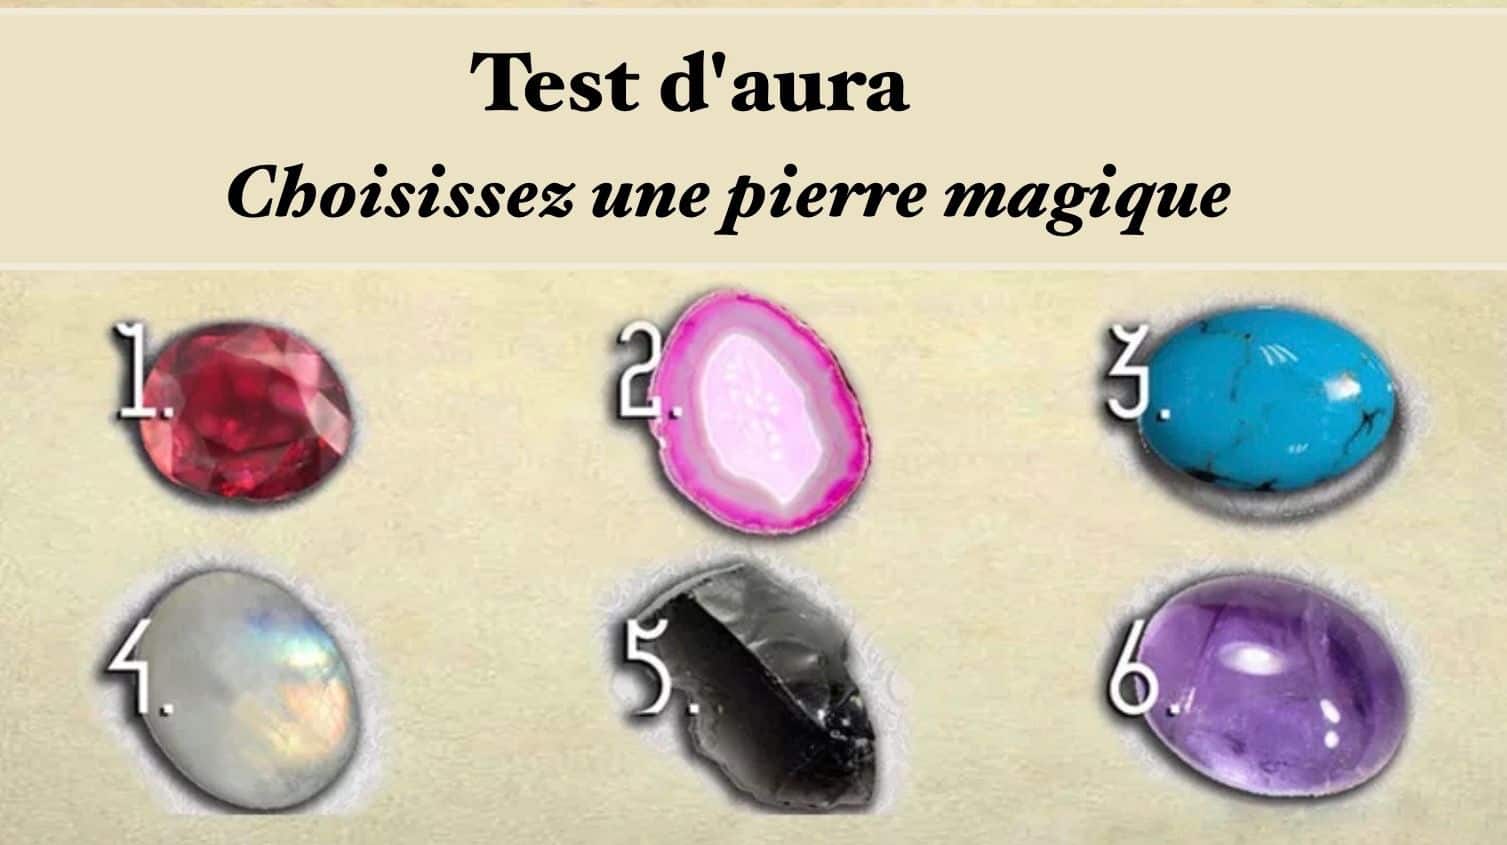 Test aura